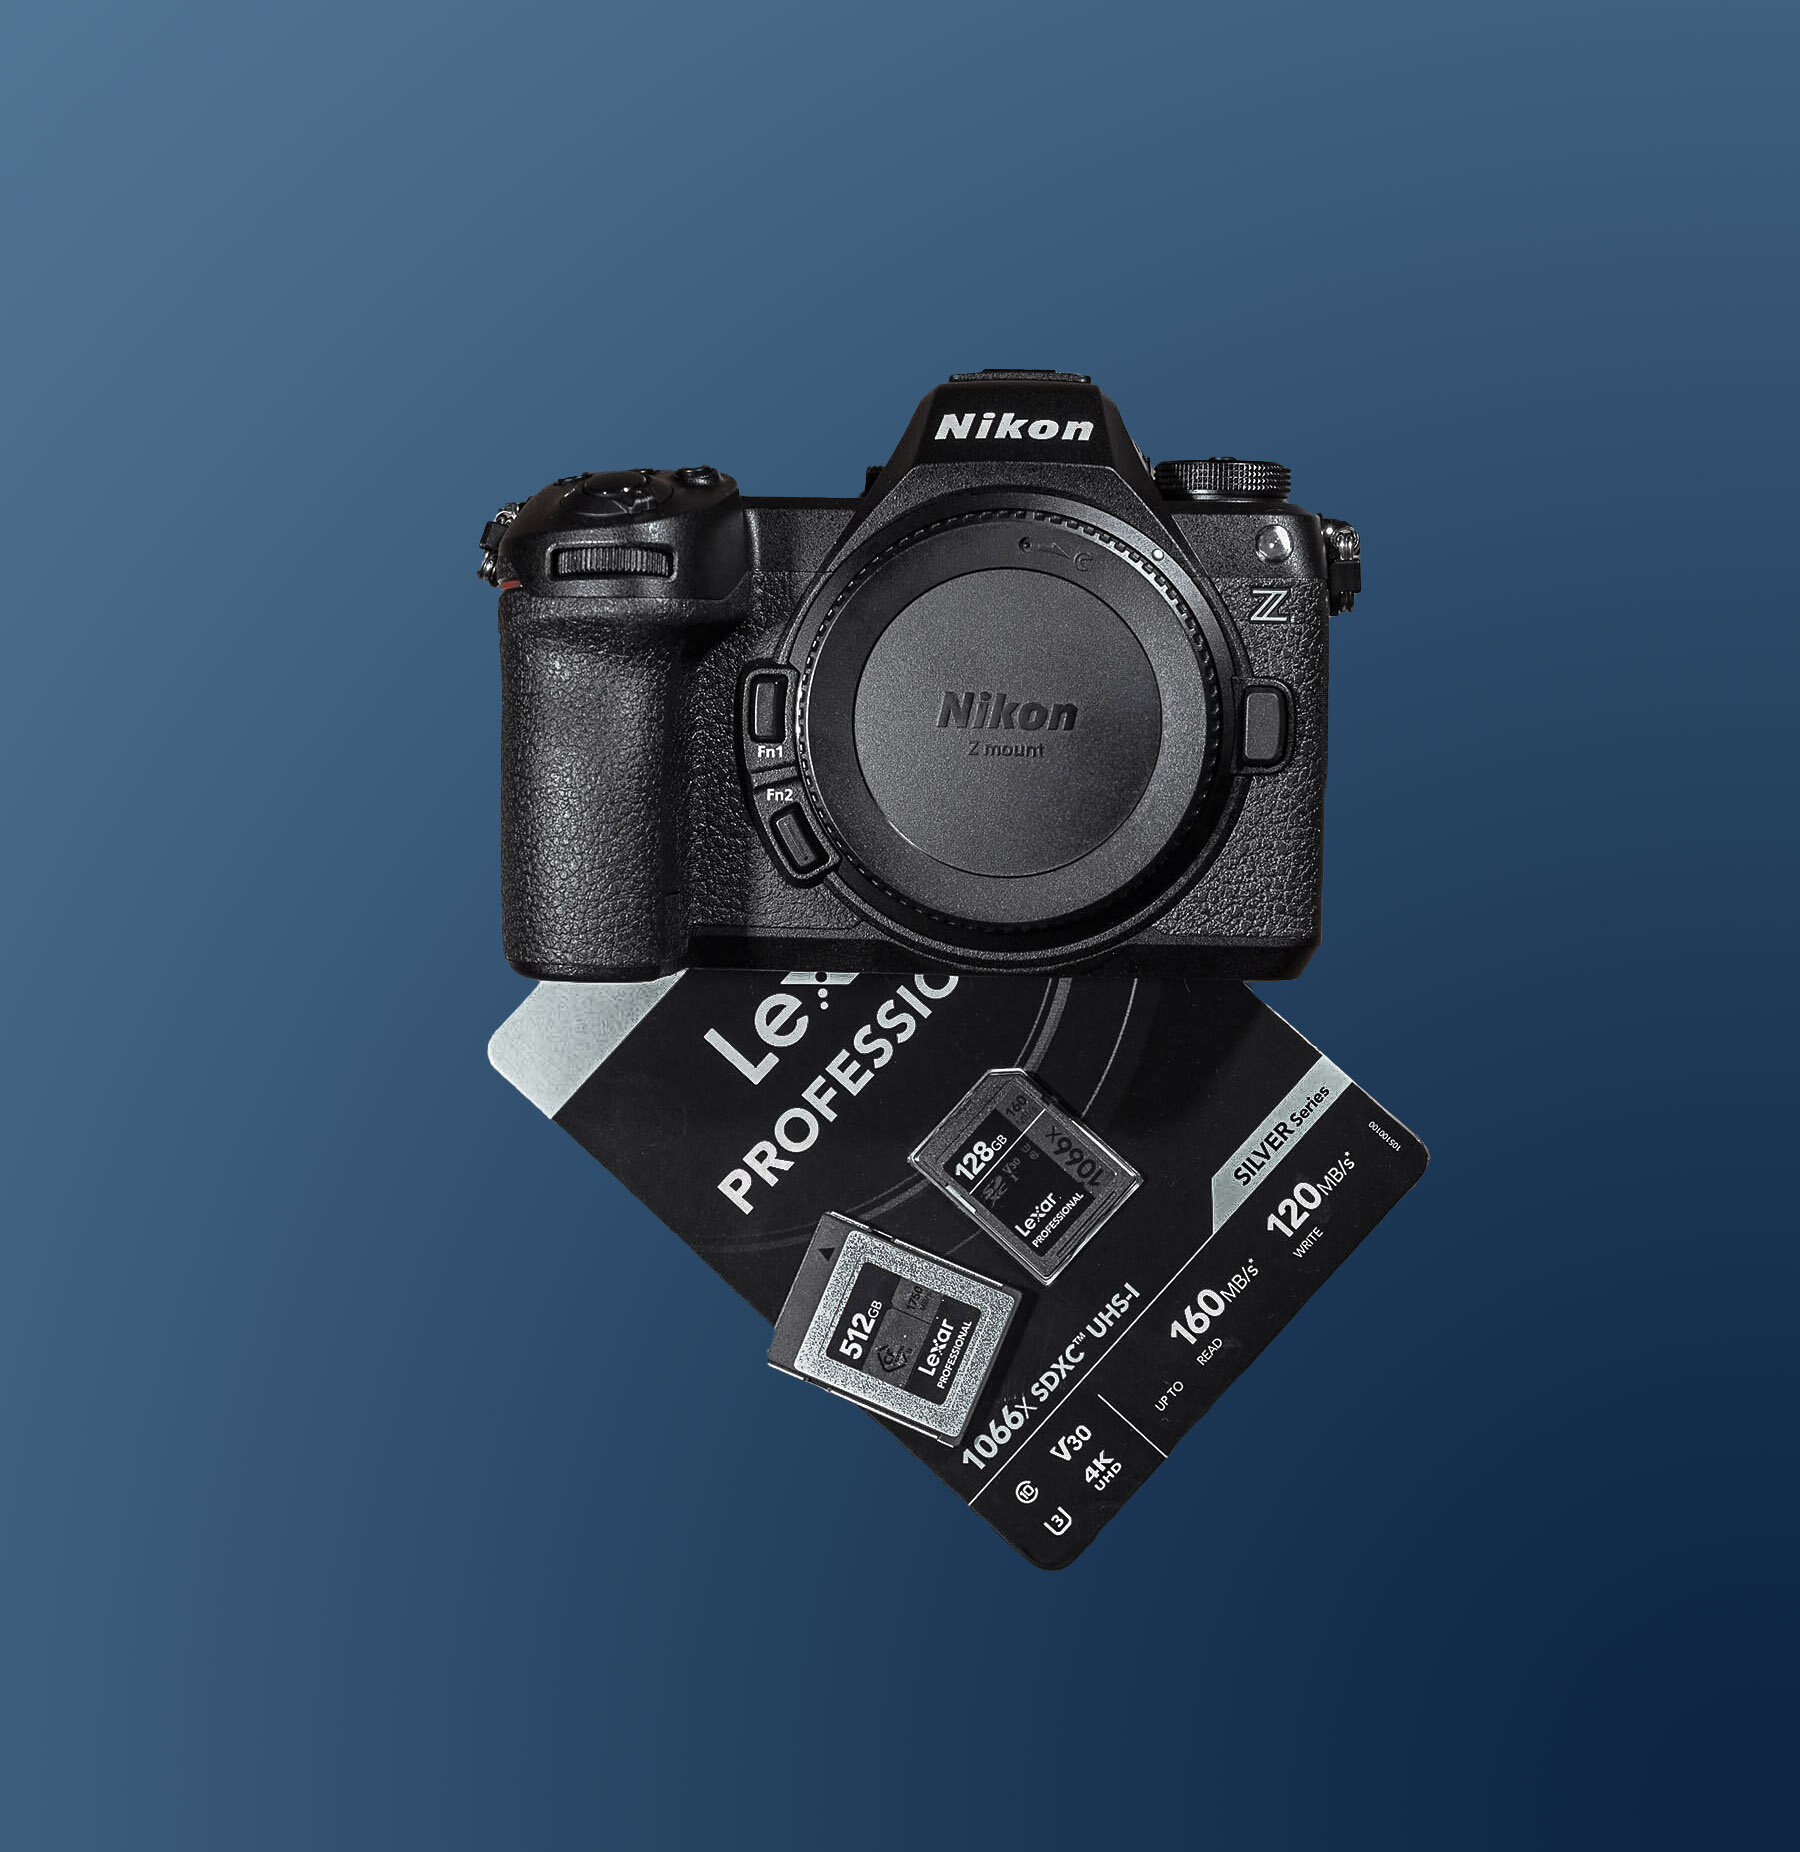 Maggiori informazioni su "Nikon Z6 III e schede di memoria"